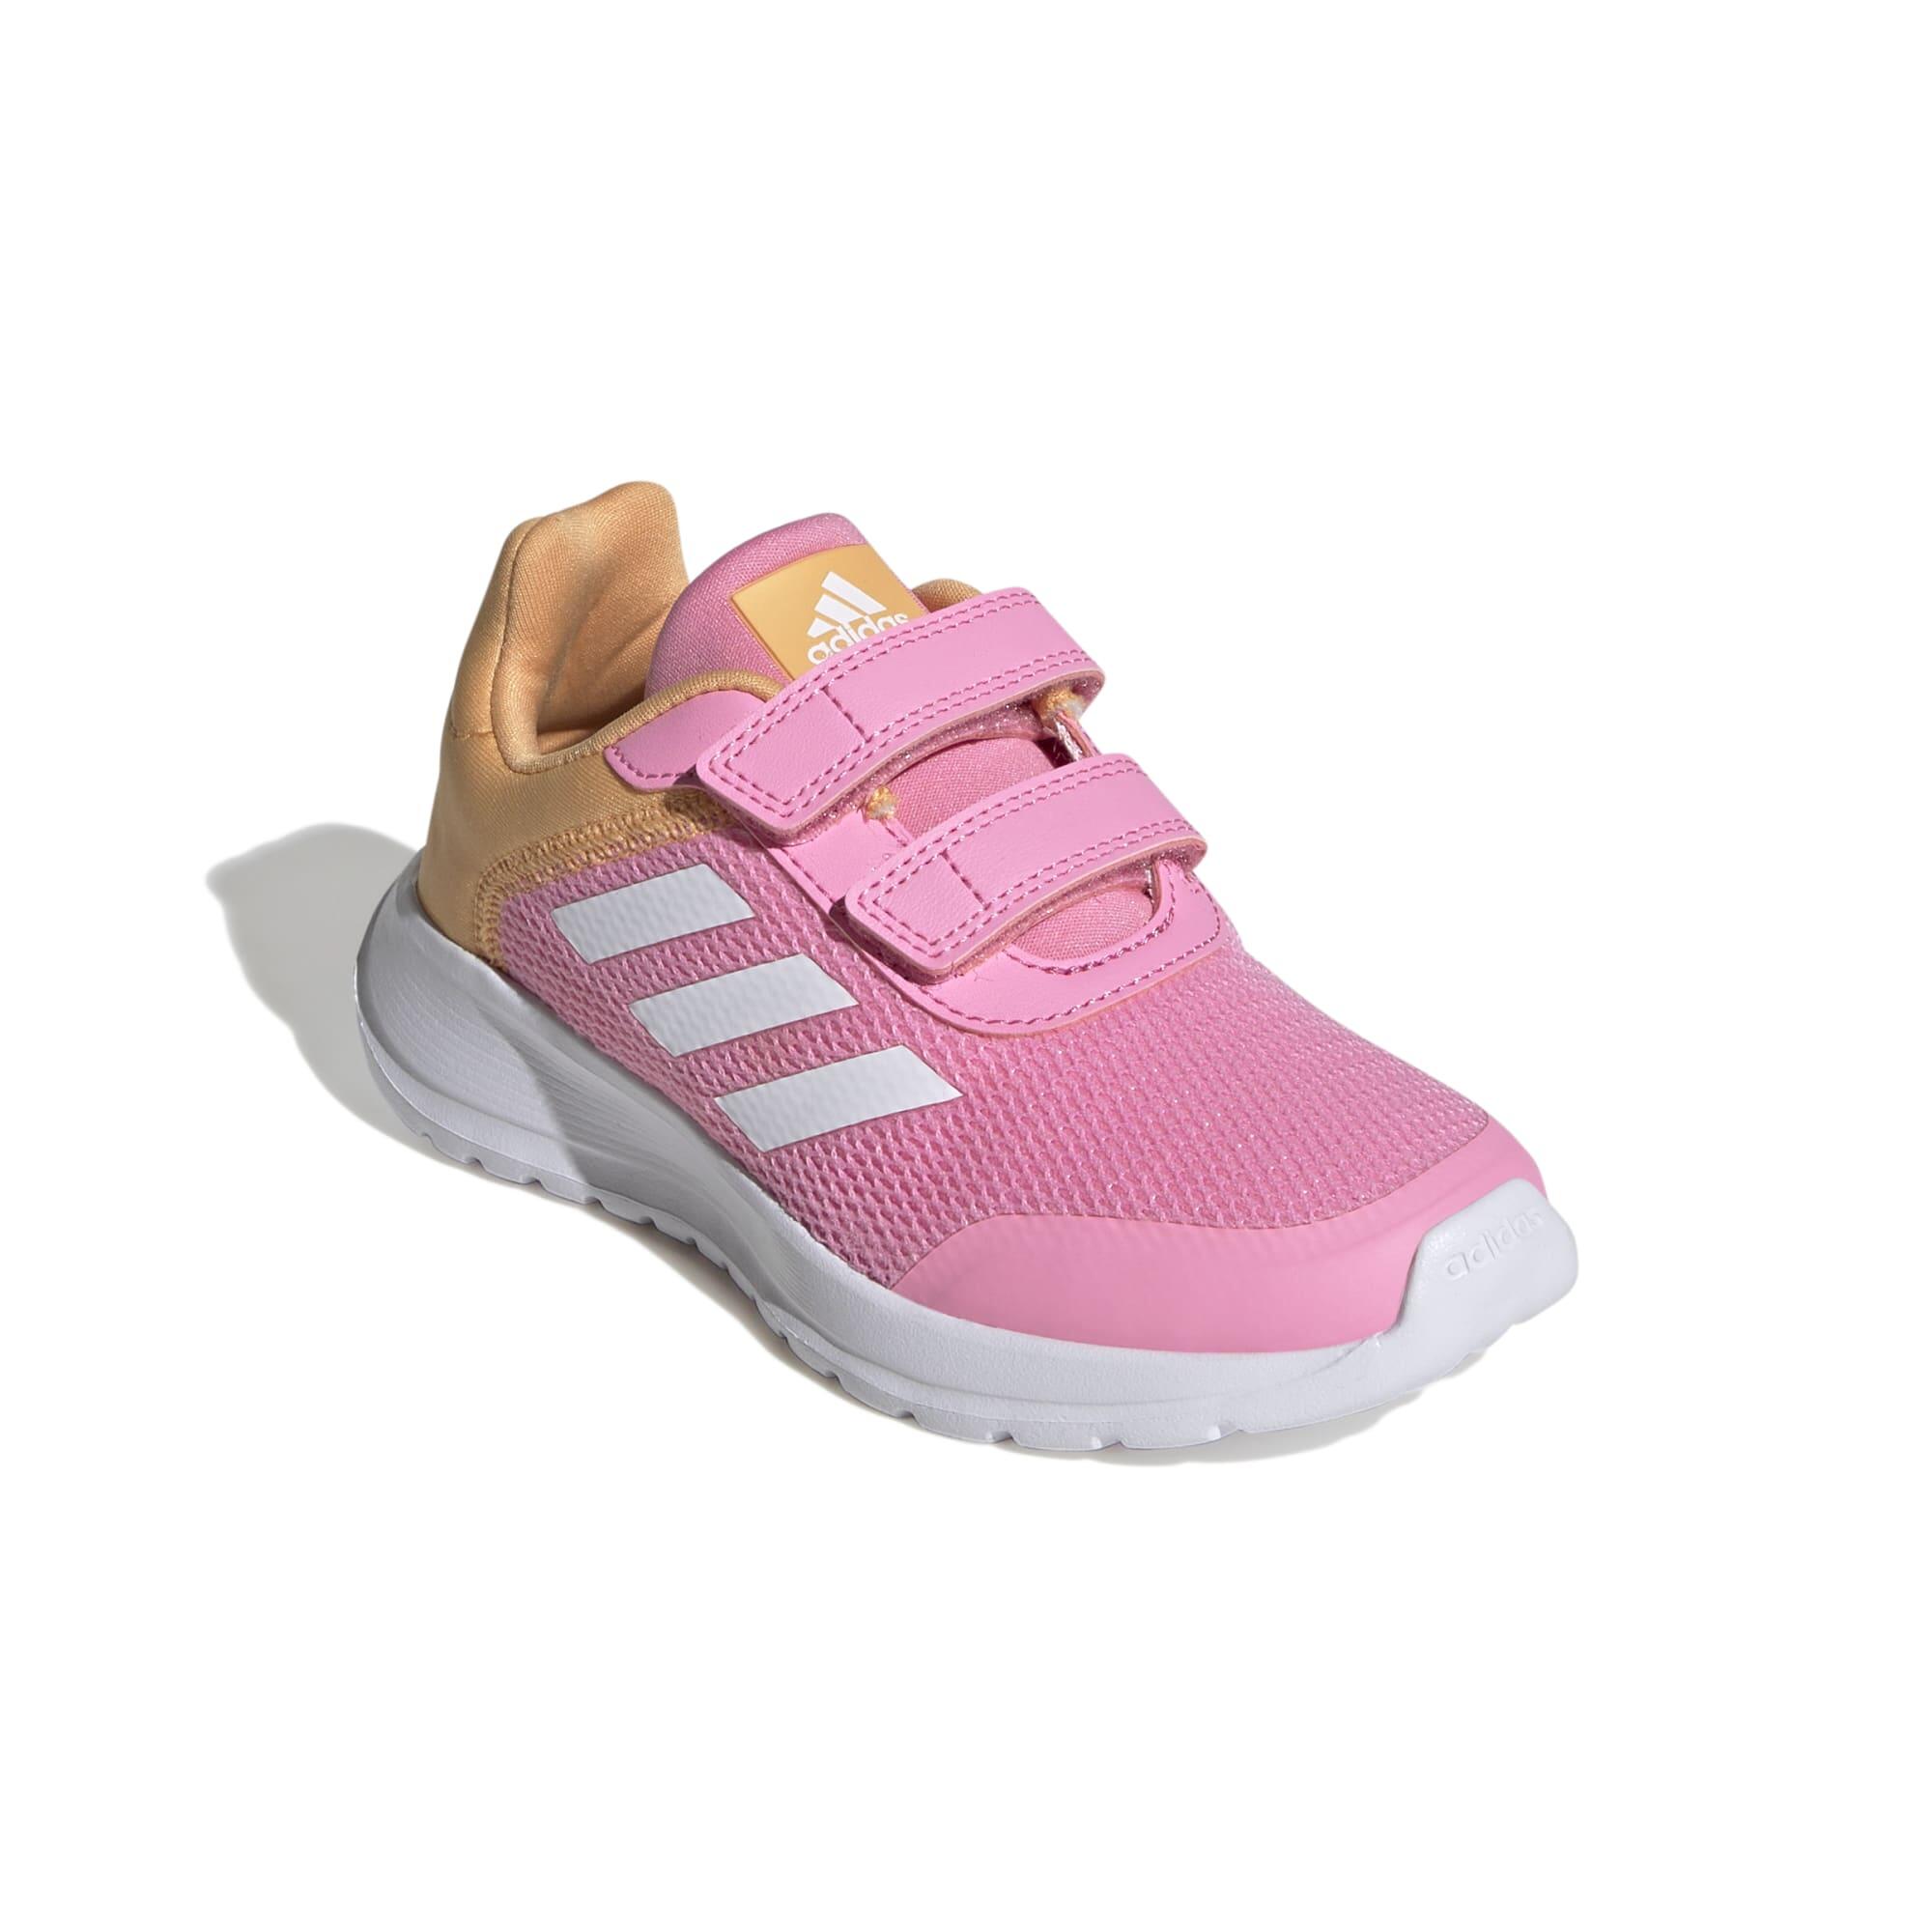 Kids' Shoes Tensaur Run - Pink / White / Orange 1/7